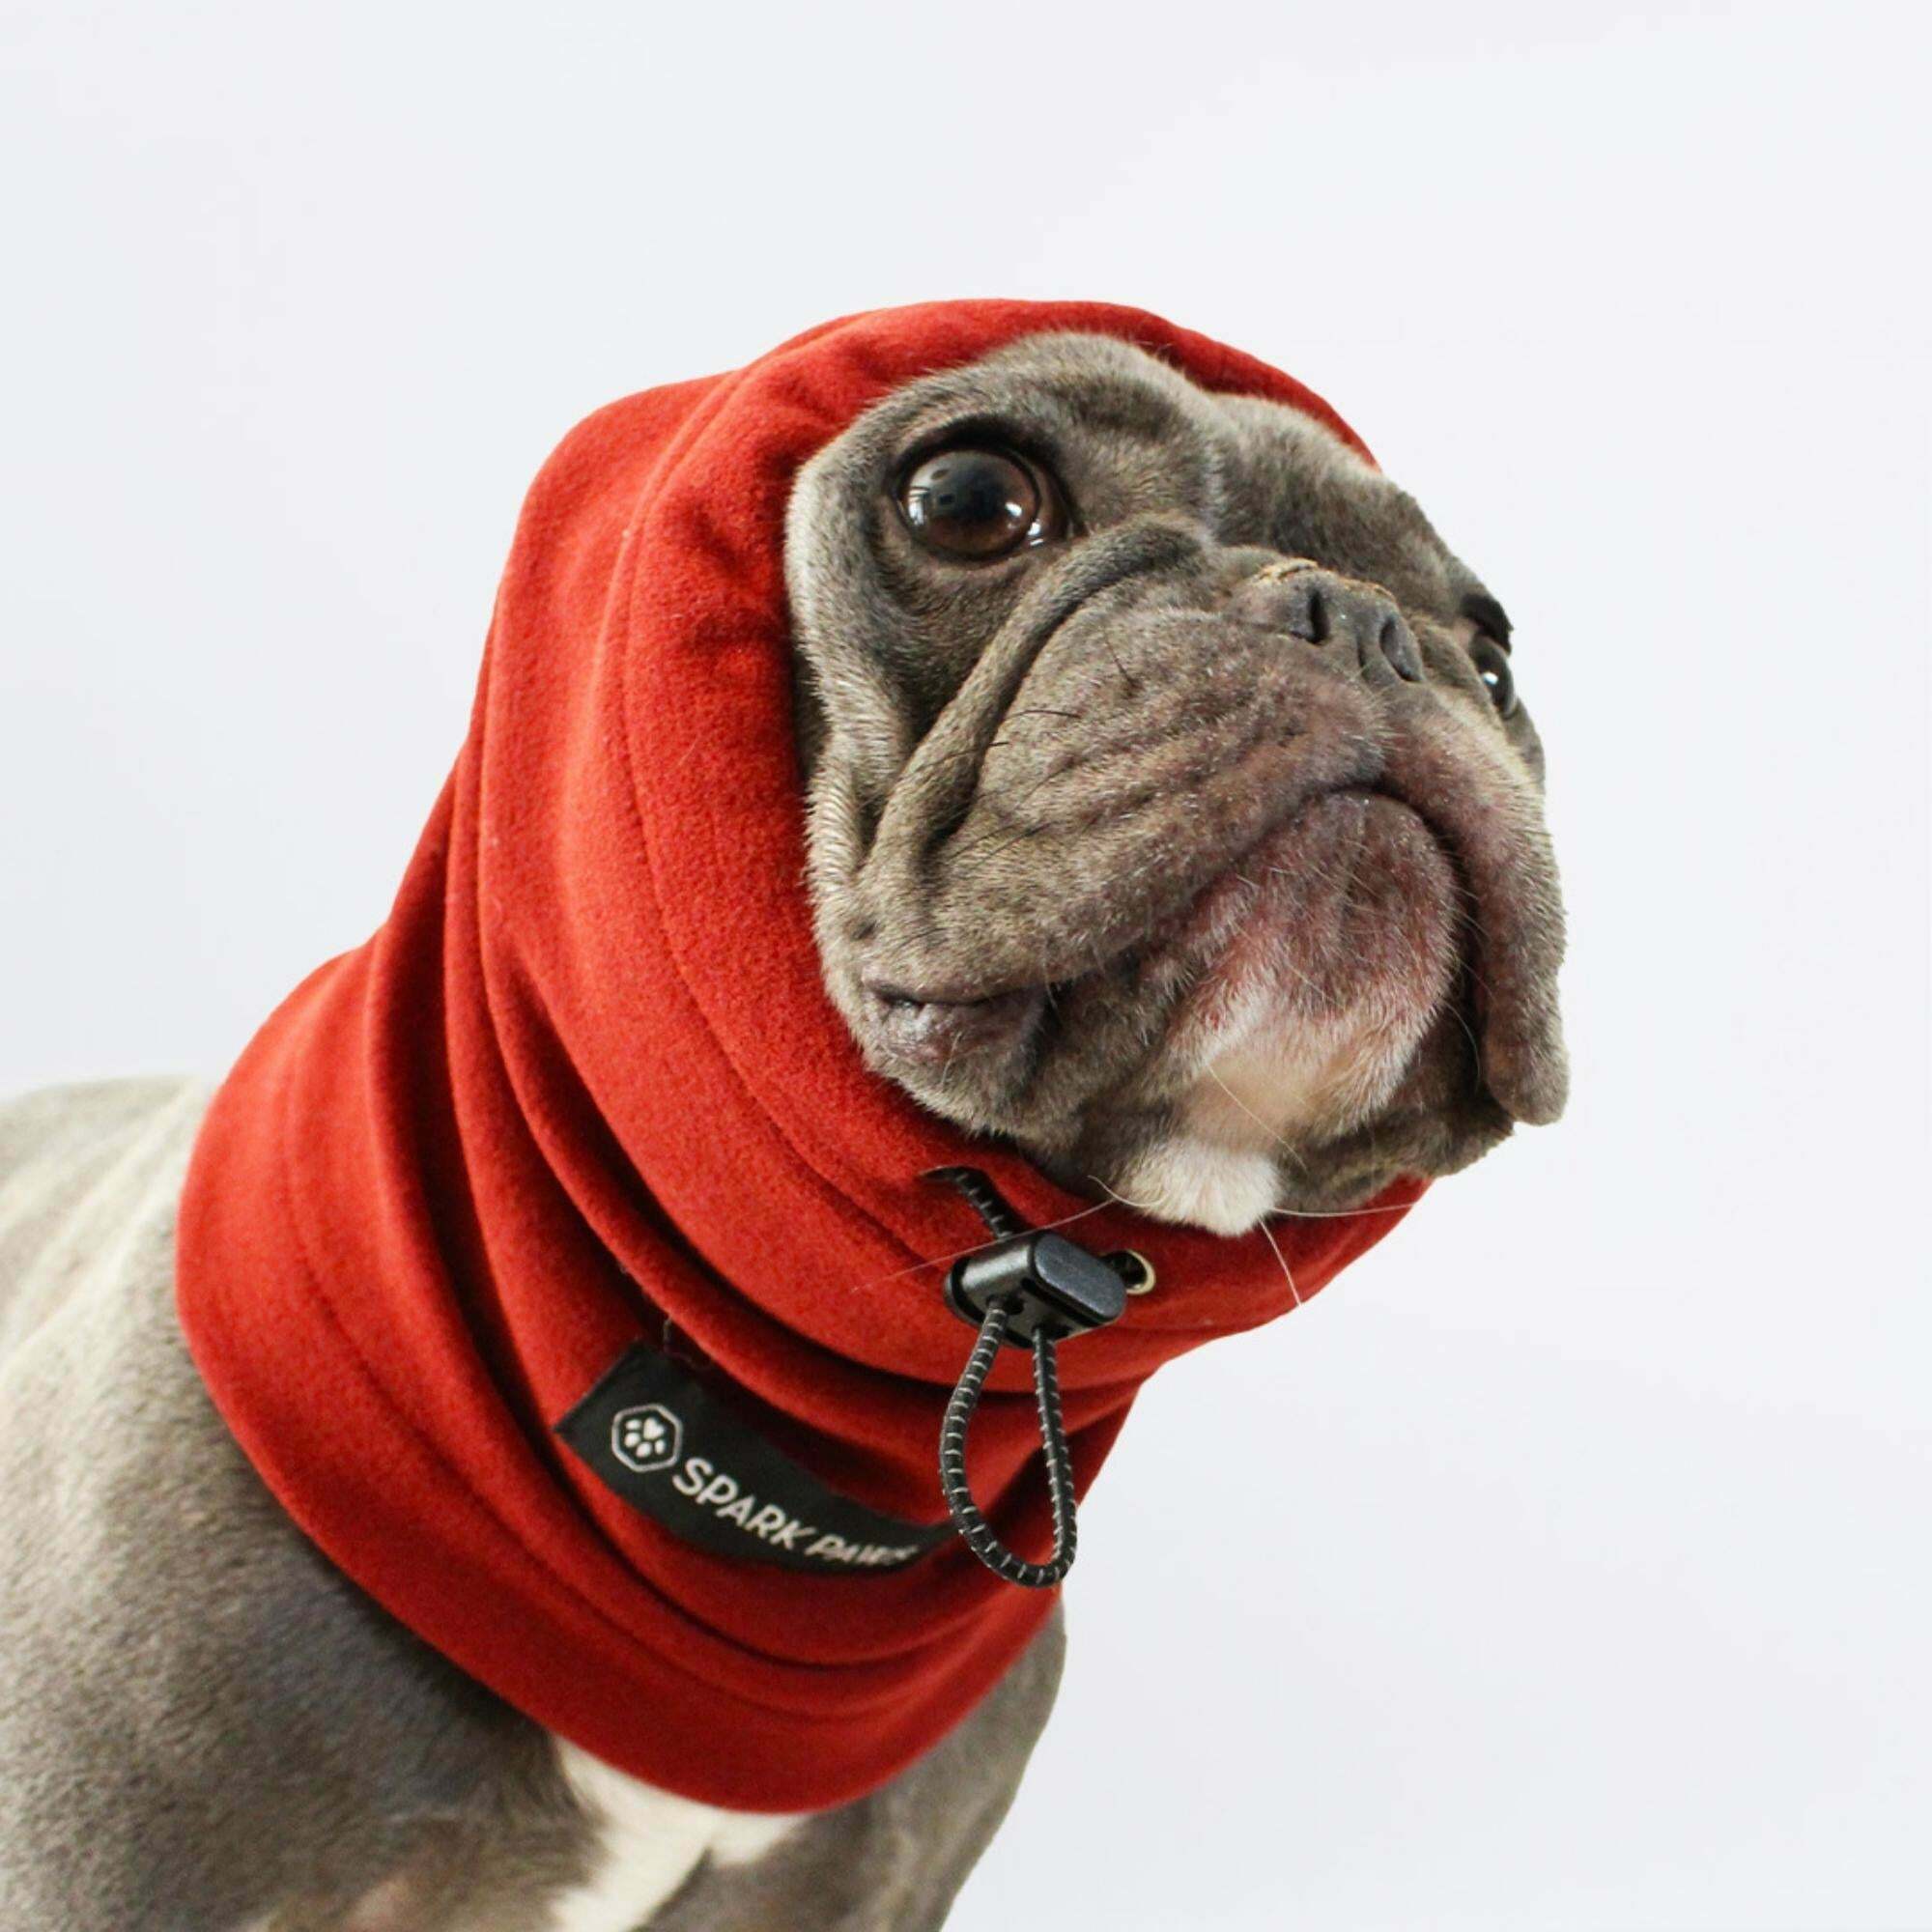 【現貨】加拿大新銳人氣品牌-Anxiety Calming Dog 耳罩保護套